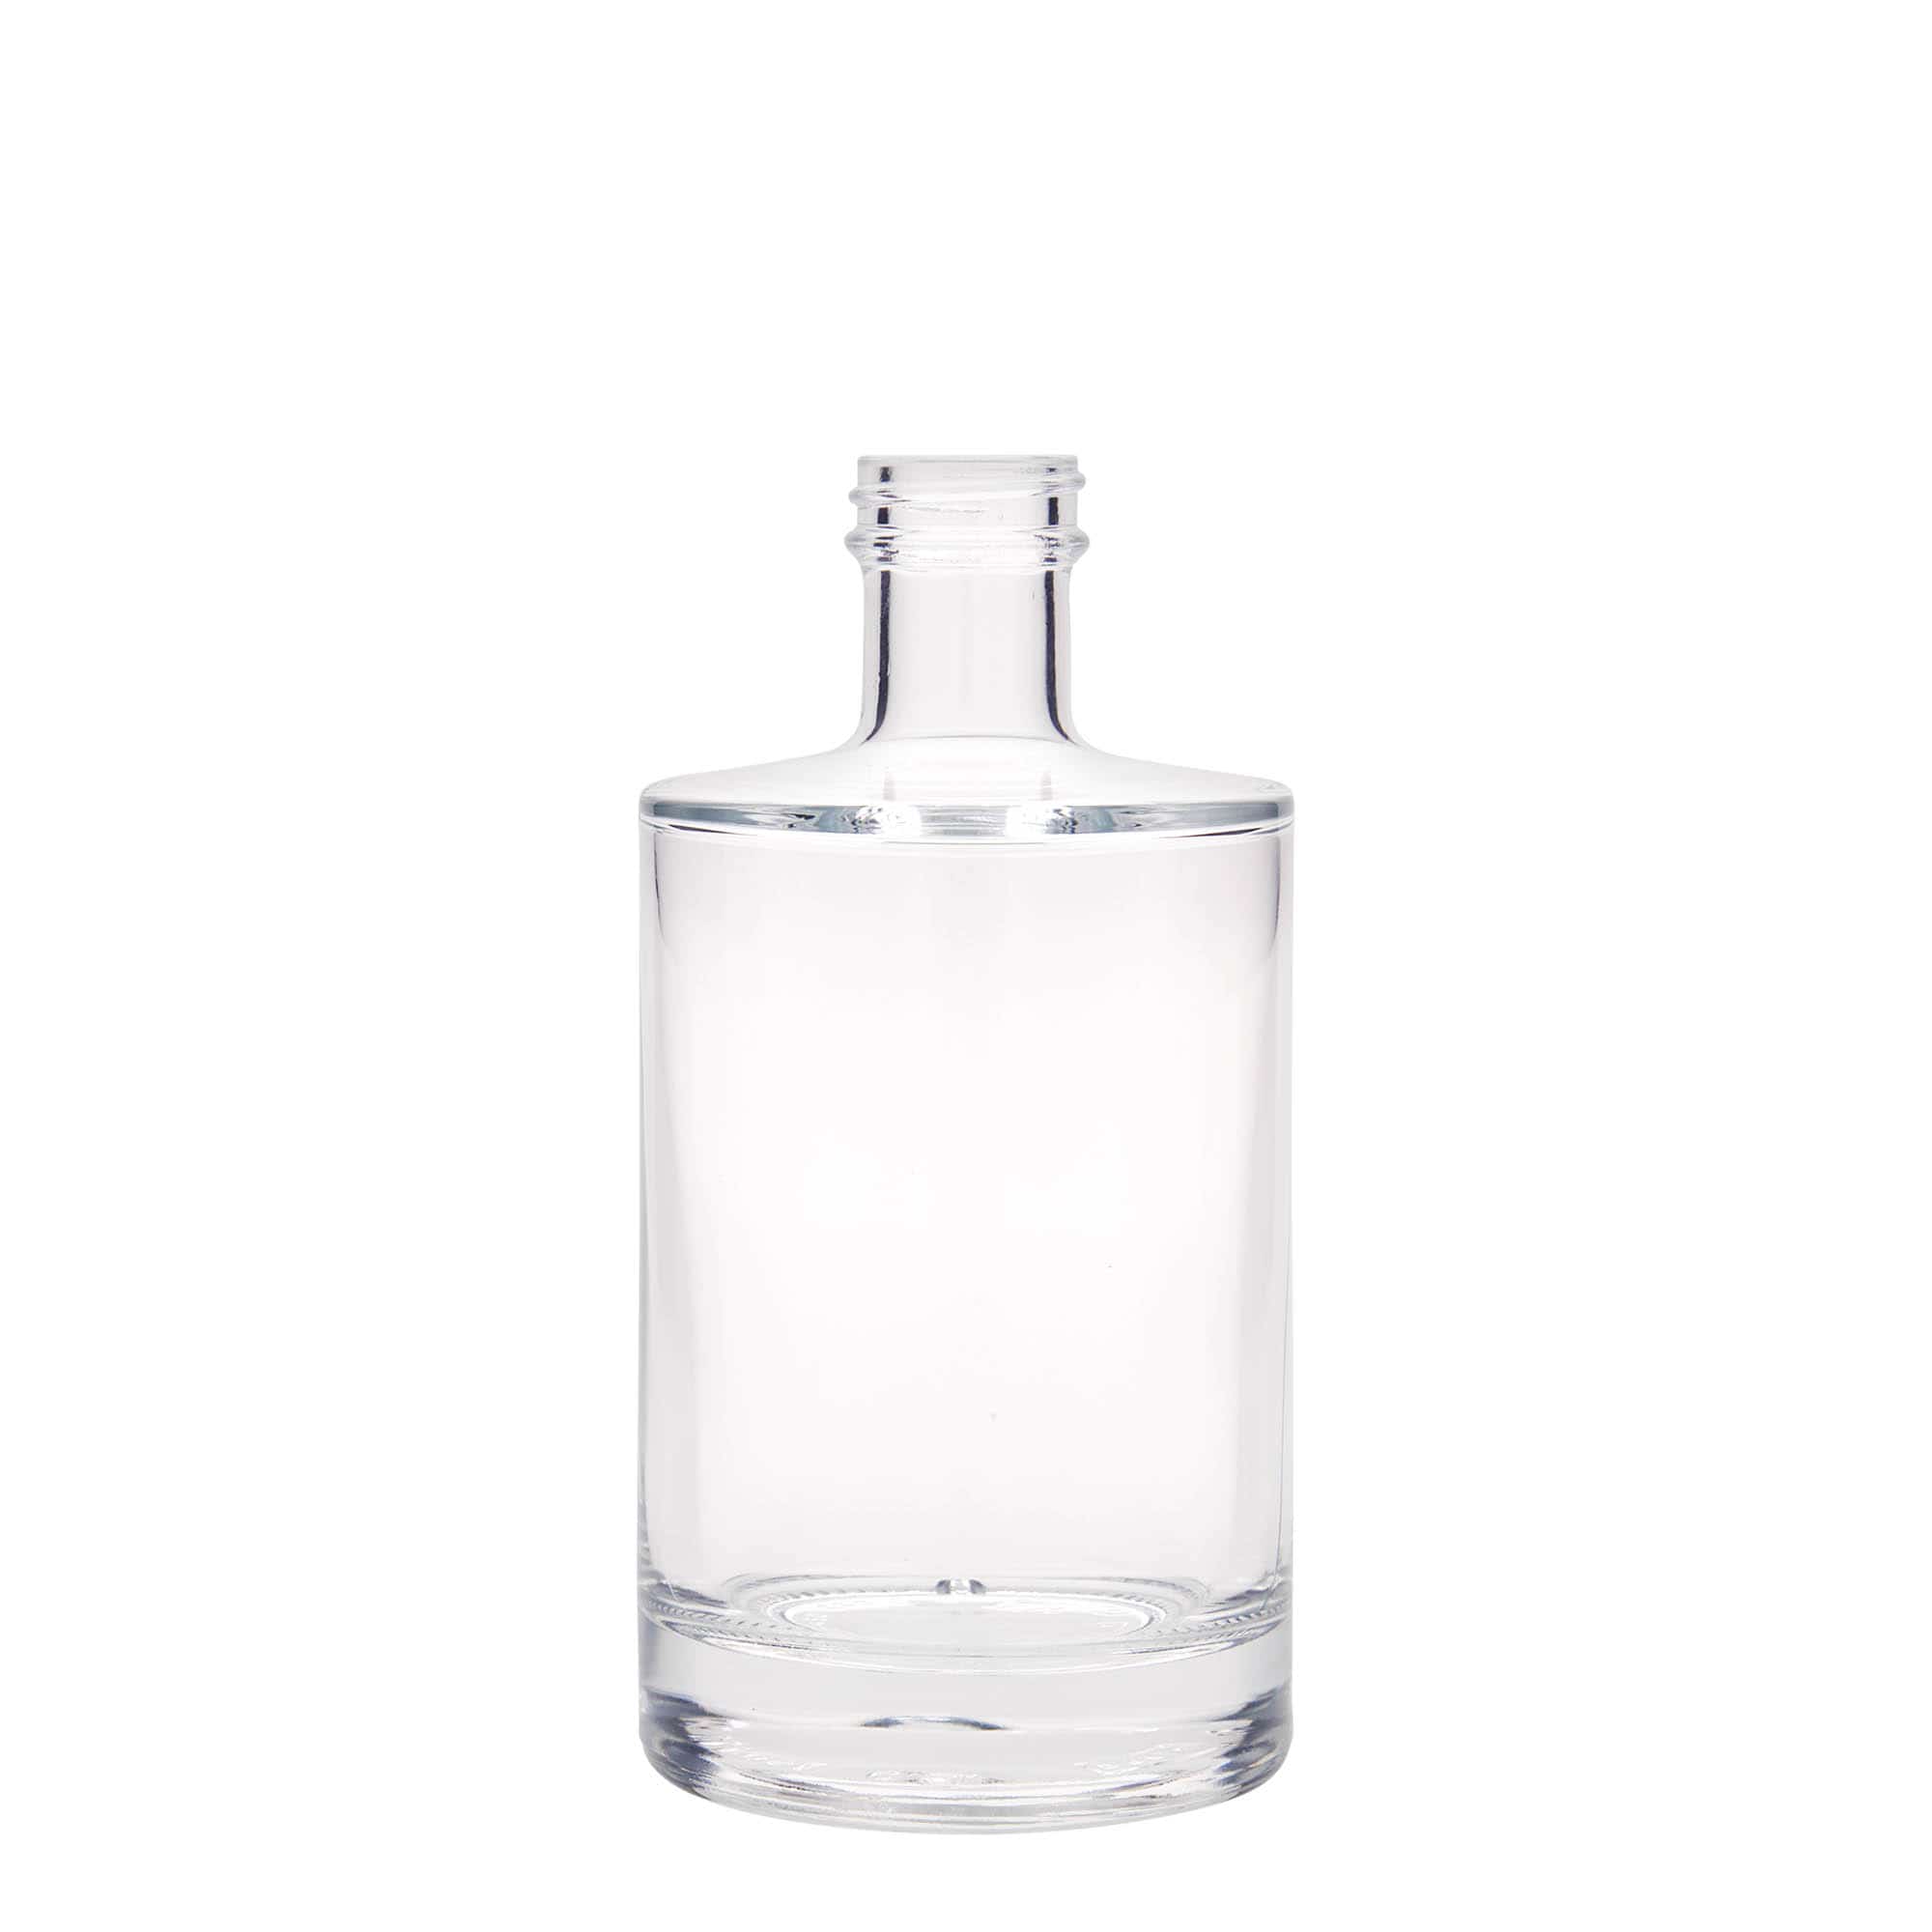 500 ml glass bottle 'Aventura', closure: GPI 33